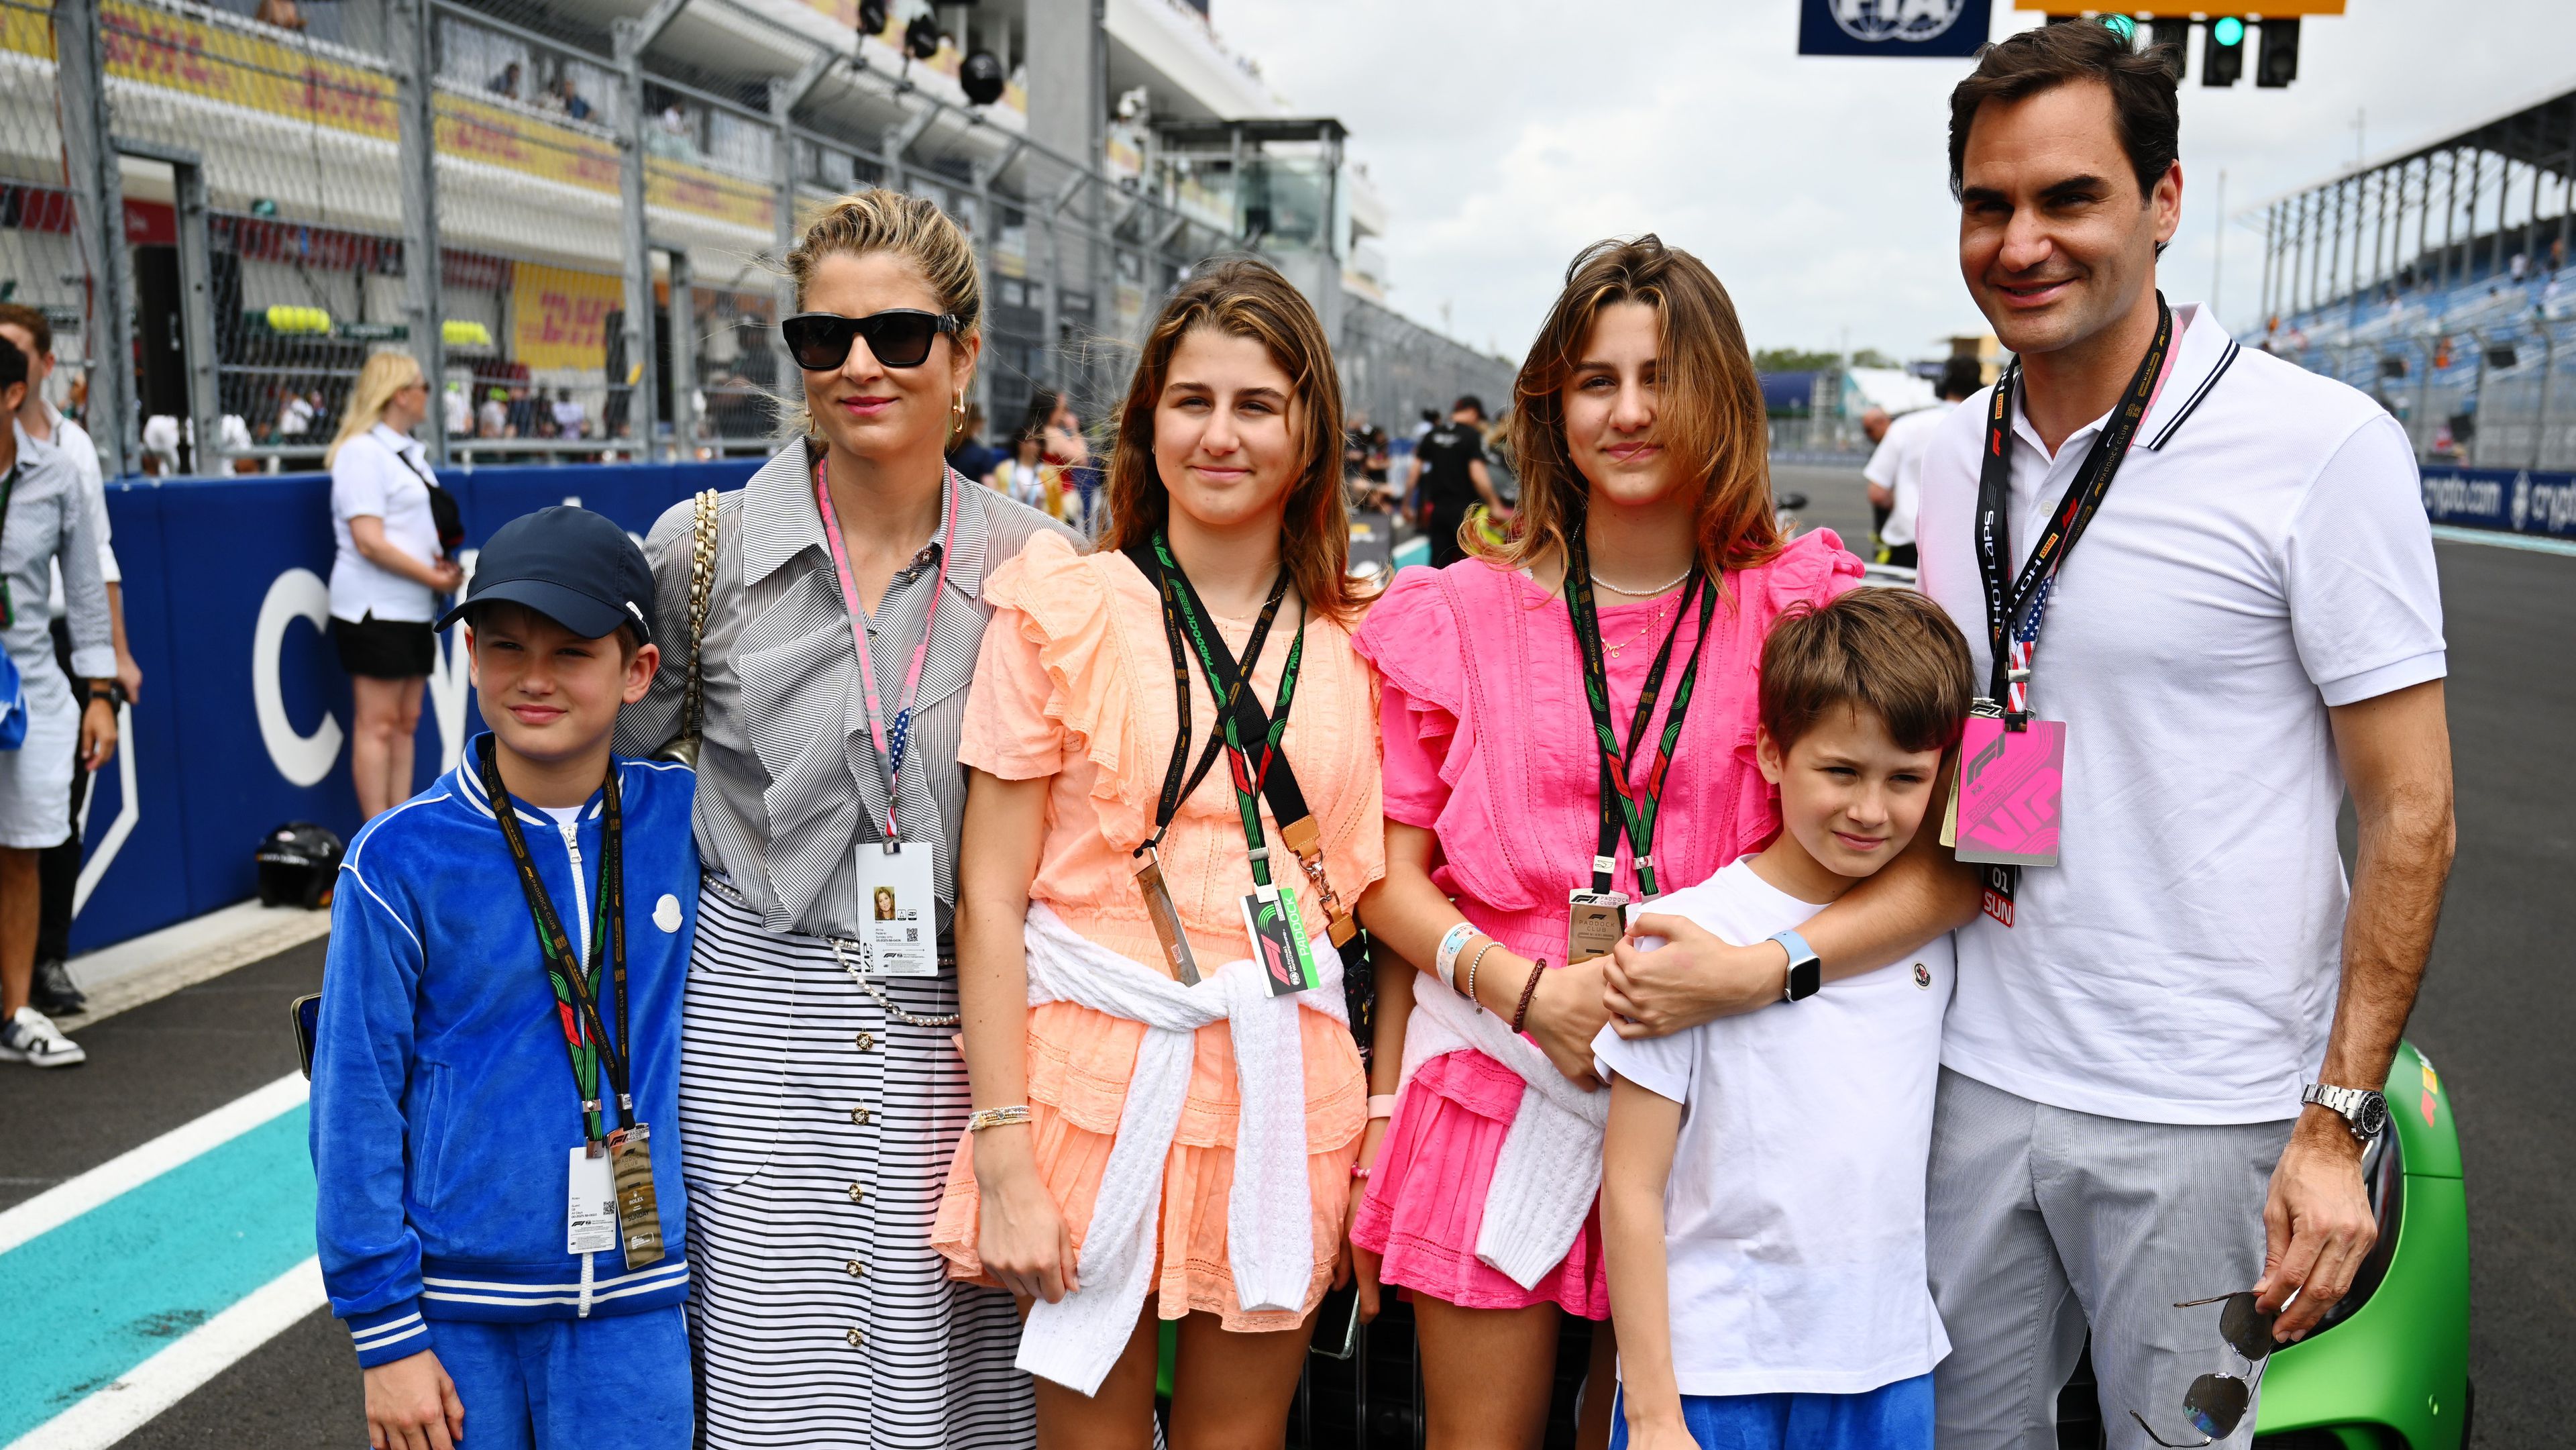 Családi program Miamiban, az F1-es futamon. Balról a második a felesége, Mirka, az ikreket viszont nem tudjuk megkülönböztetni egymástól... (Fotó: Getty Images)